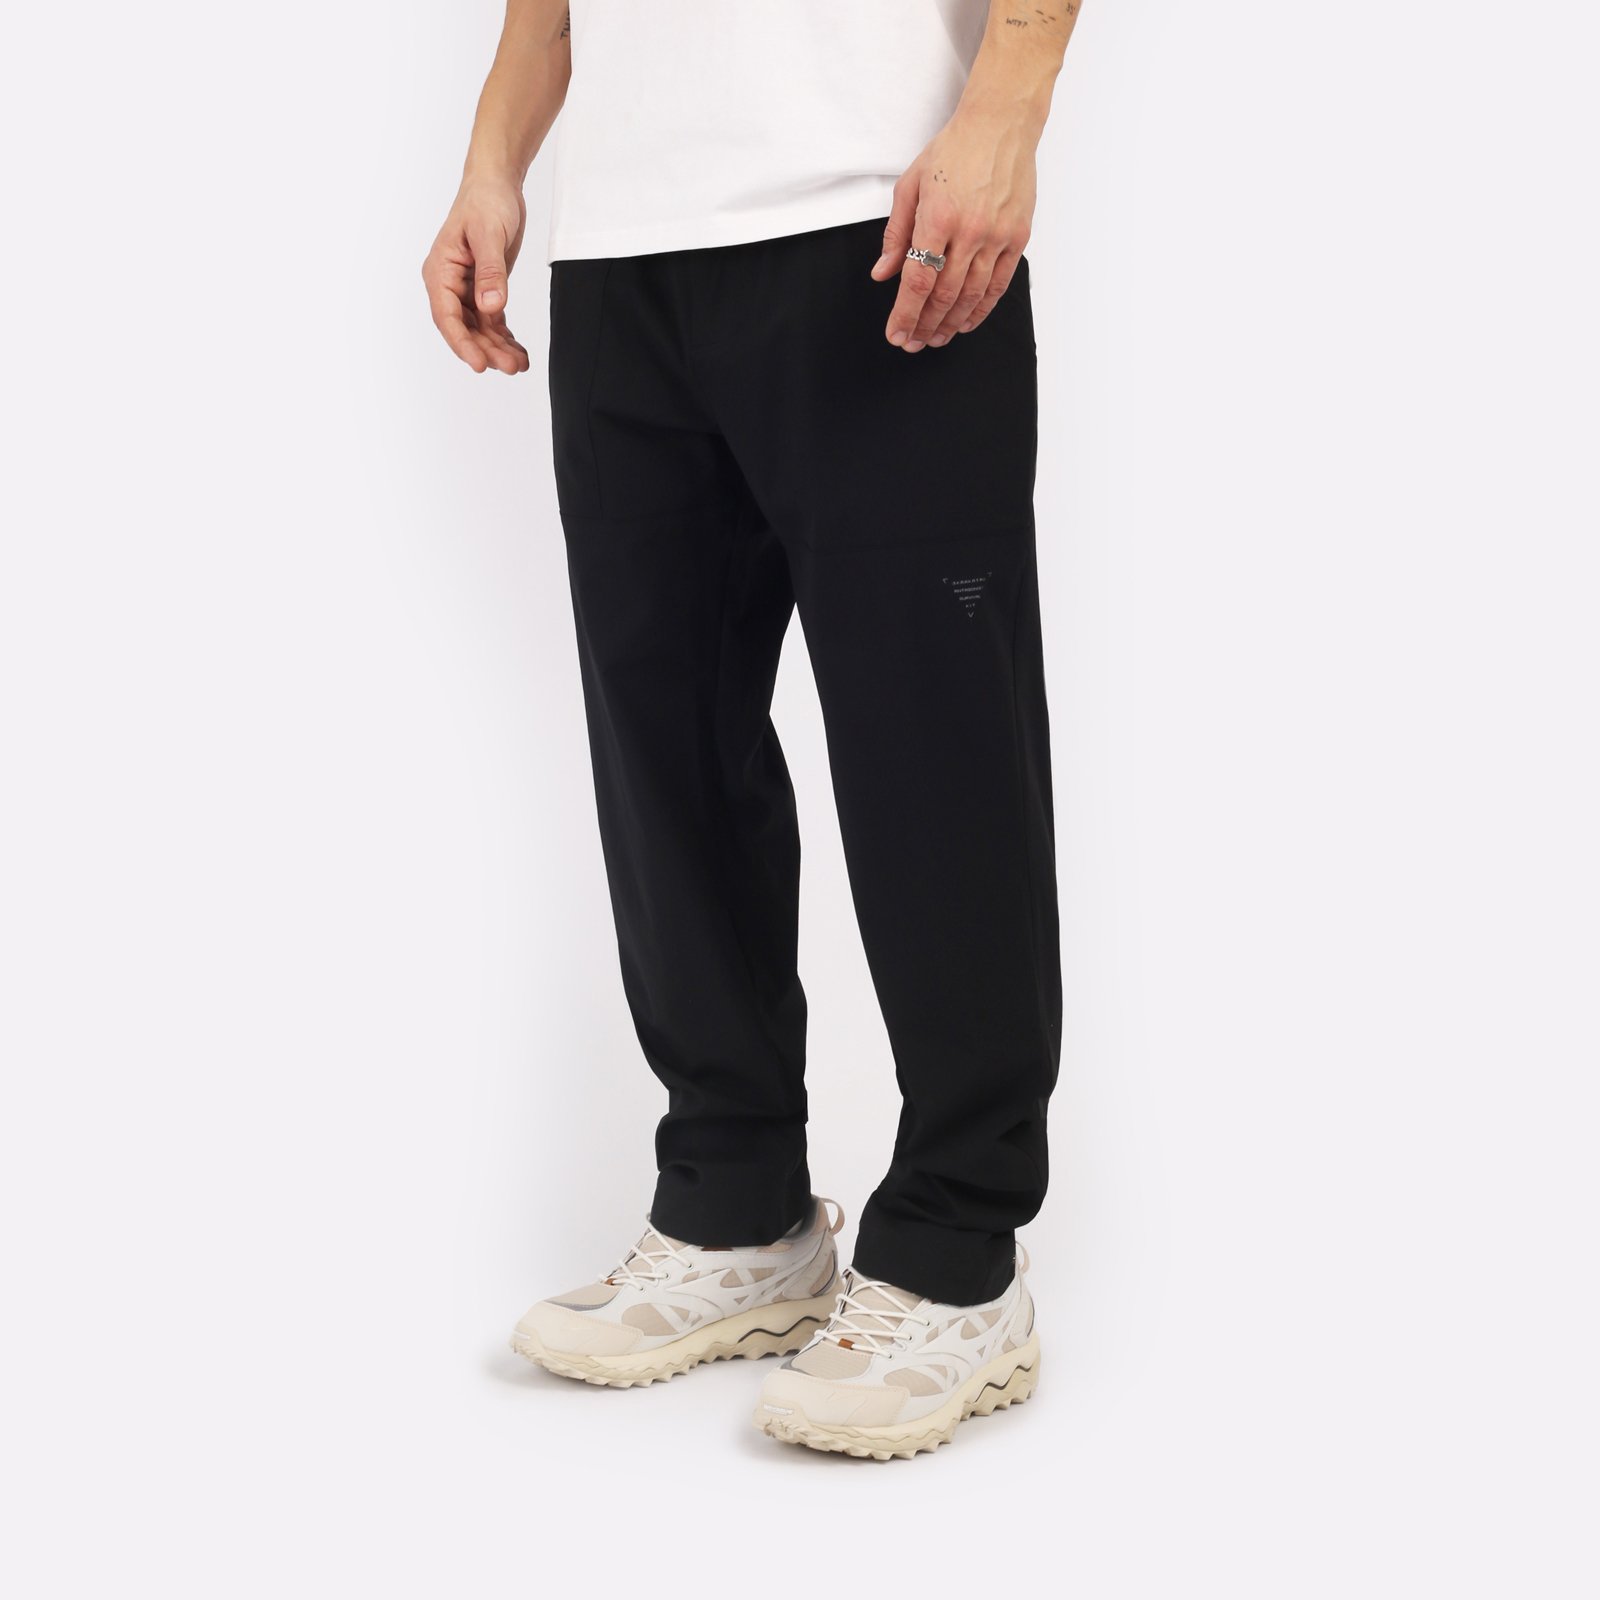 мужские черные брюки KRAKATAU Rm180-1 Rm180-1-чёрный - цена, описание, фото 3